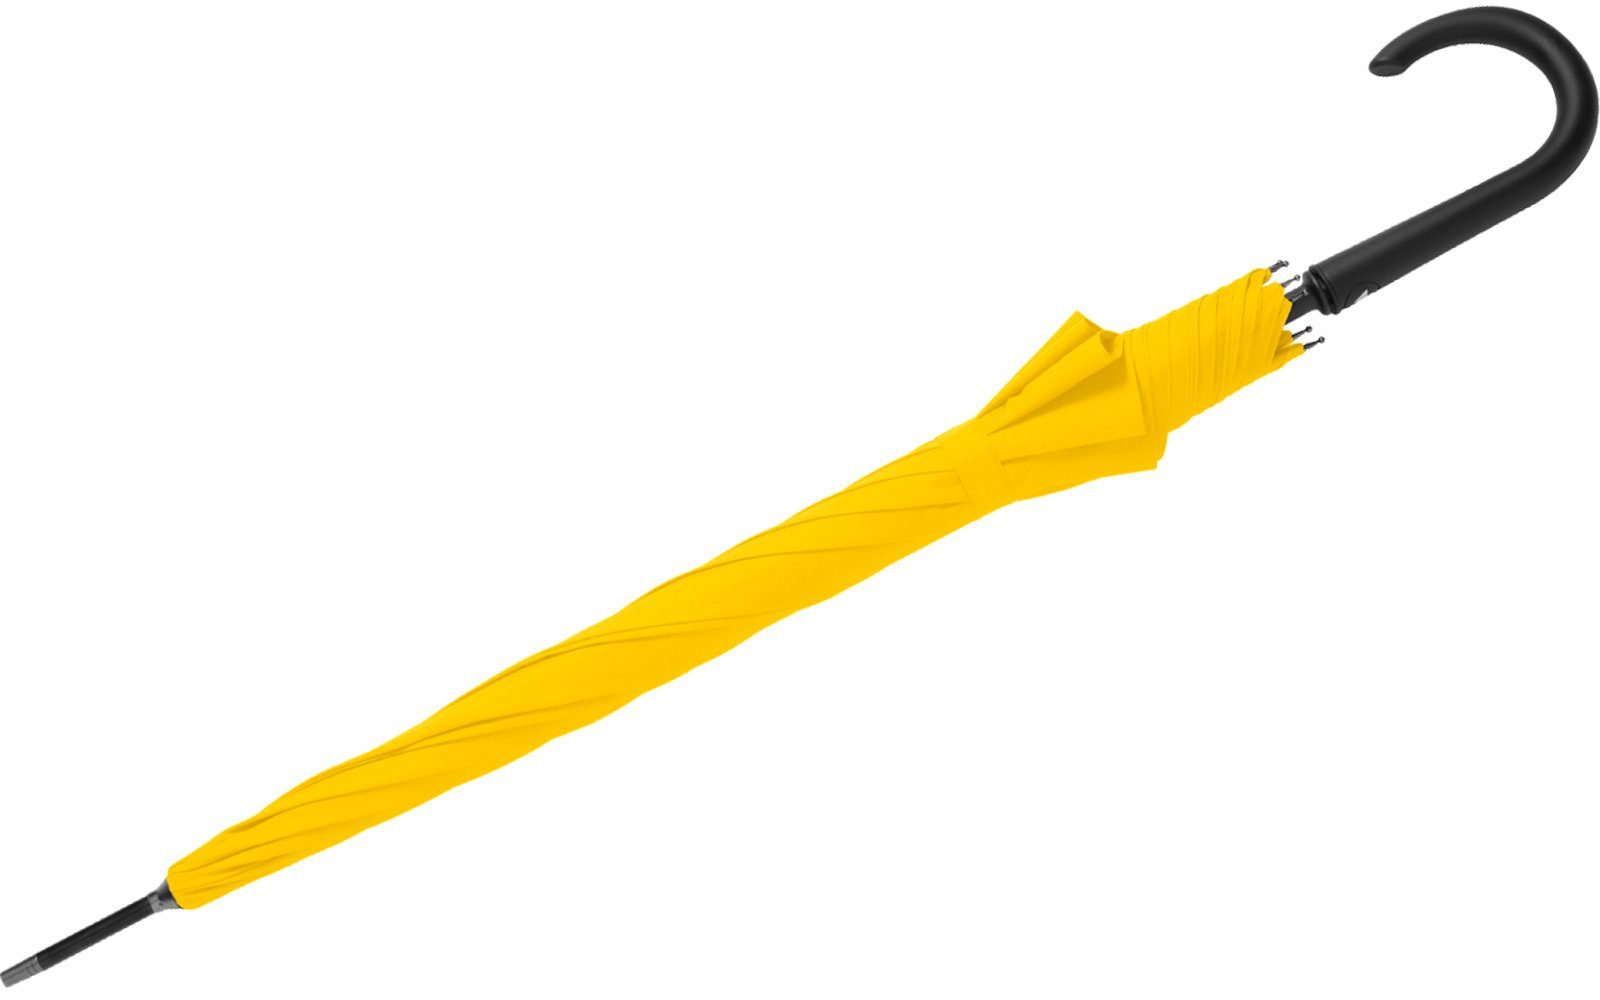 RS-Versand Langregenschirm großer gelb Auf-Automatik, Regenschirm Stahl-Fiberglas-Gestell, integrierter Auslöseknopf mit stabiler